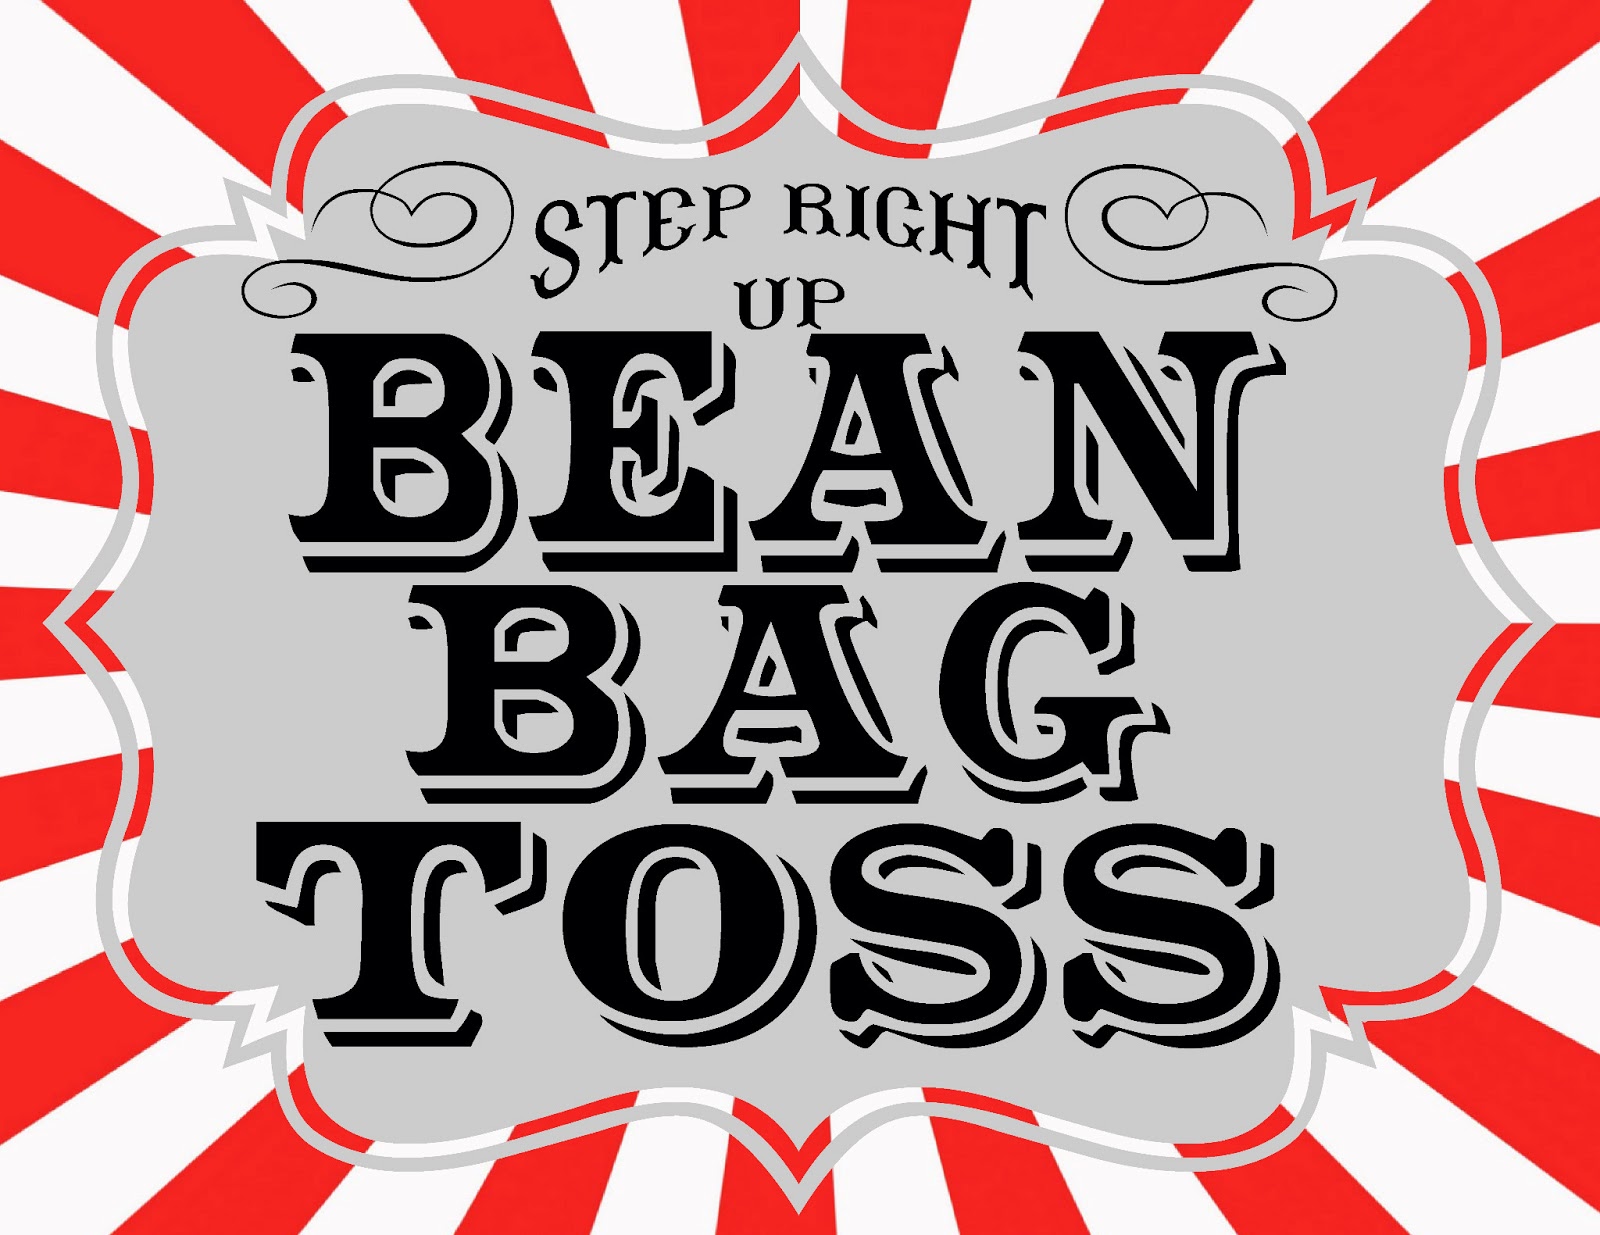 bean bag toss clipart - photo #37